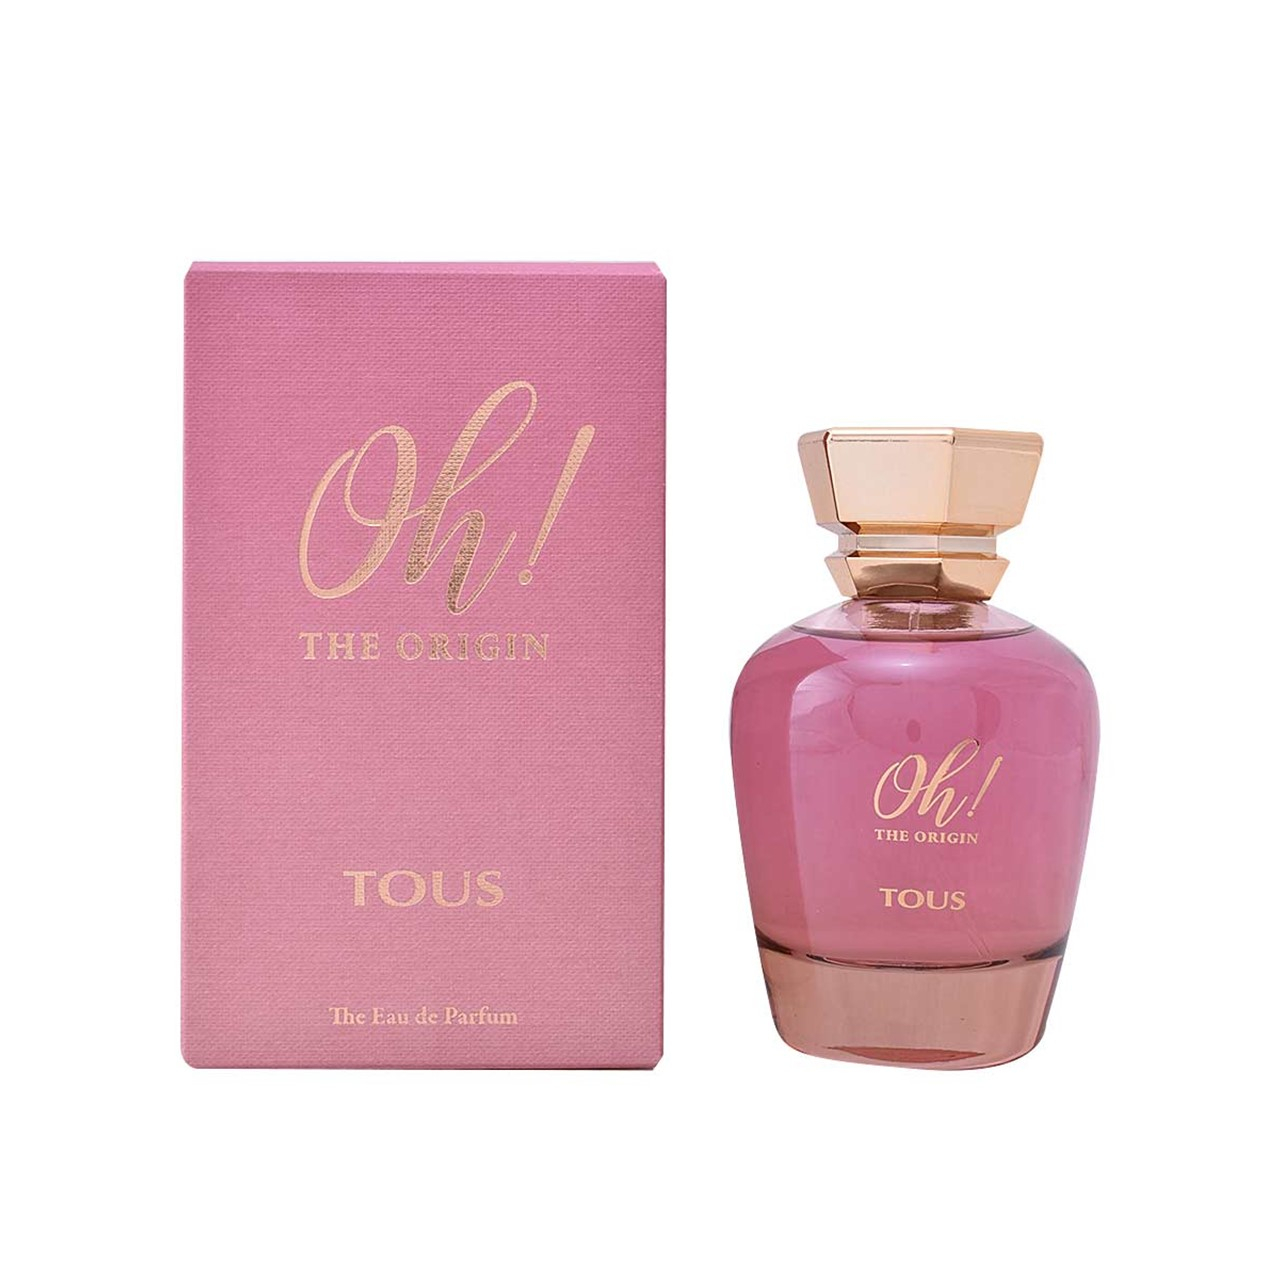 Tous Oh! The Origin Eau de Parfum 100ml (3.4fl oz)